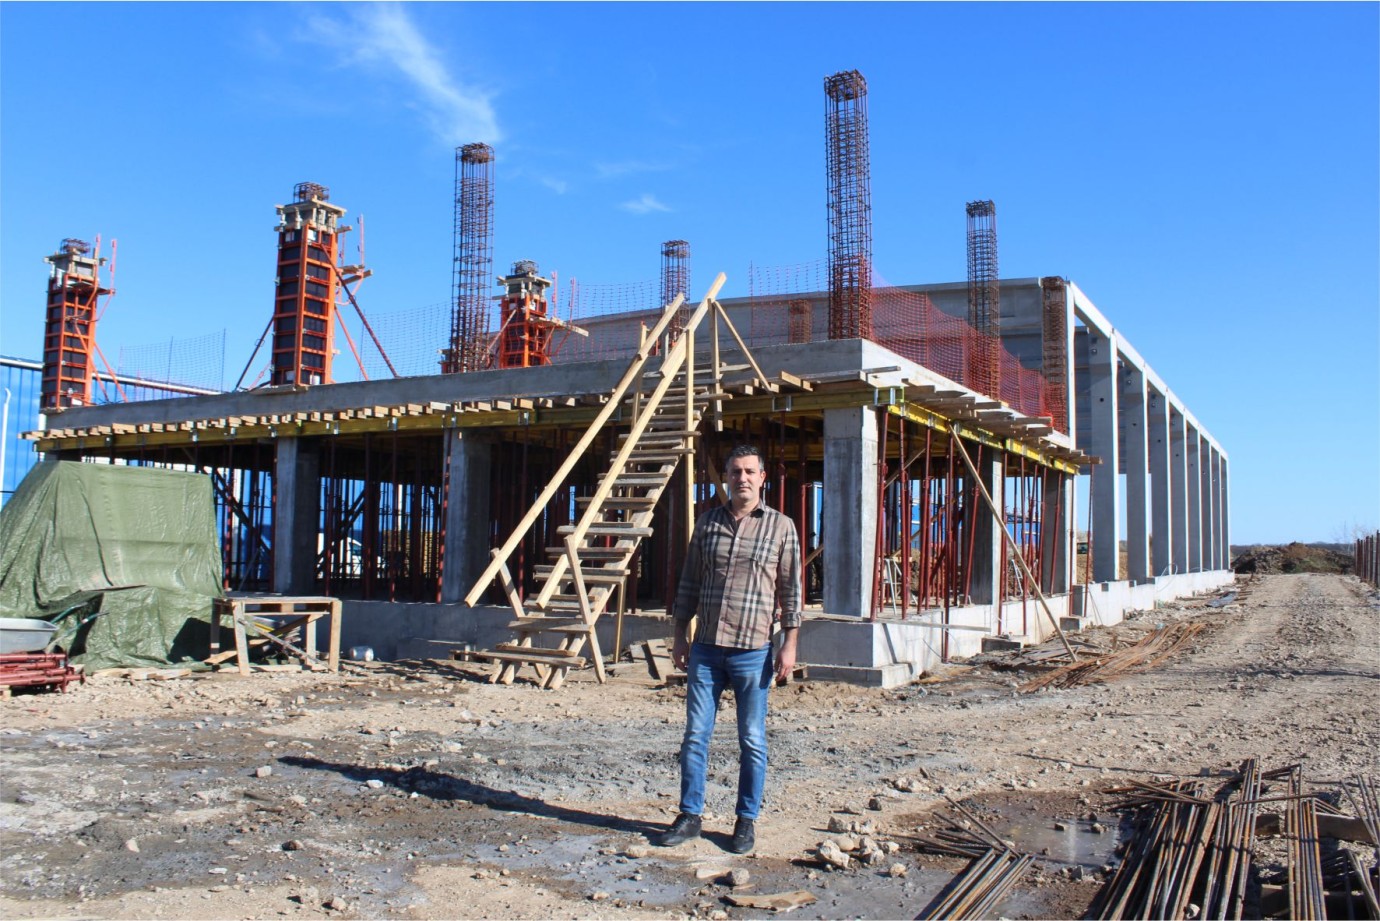 ROM TELTEKS'in sahibi Serkan Dinç, kablodan sonra inşaat sektörüne girdi